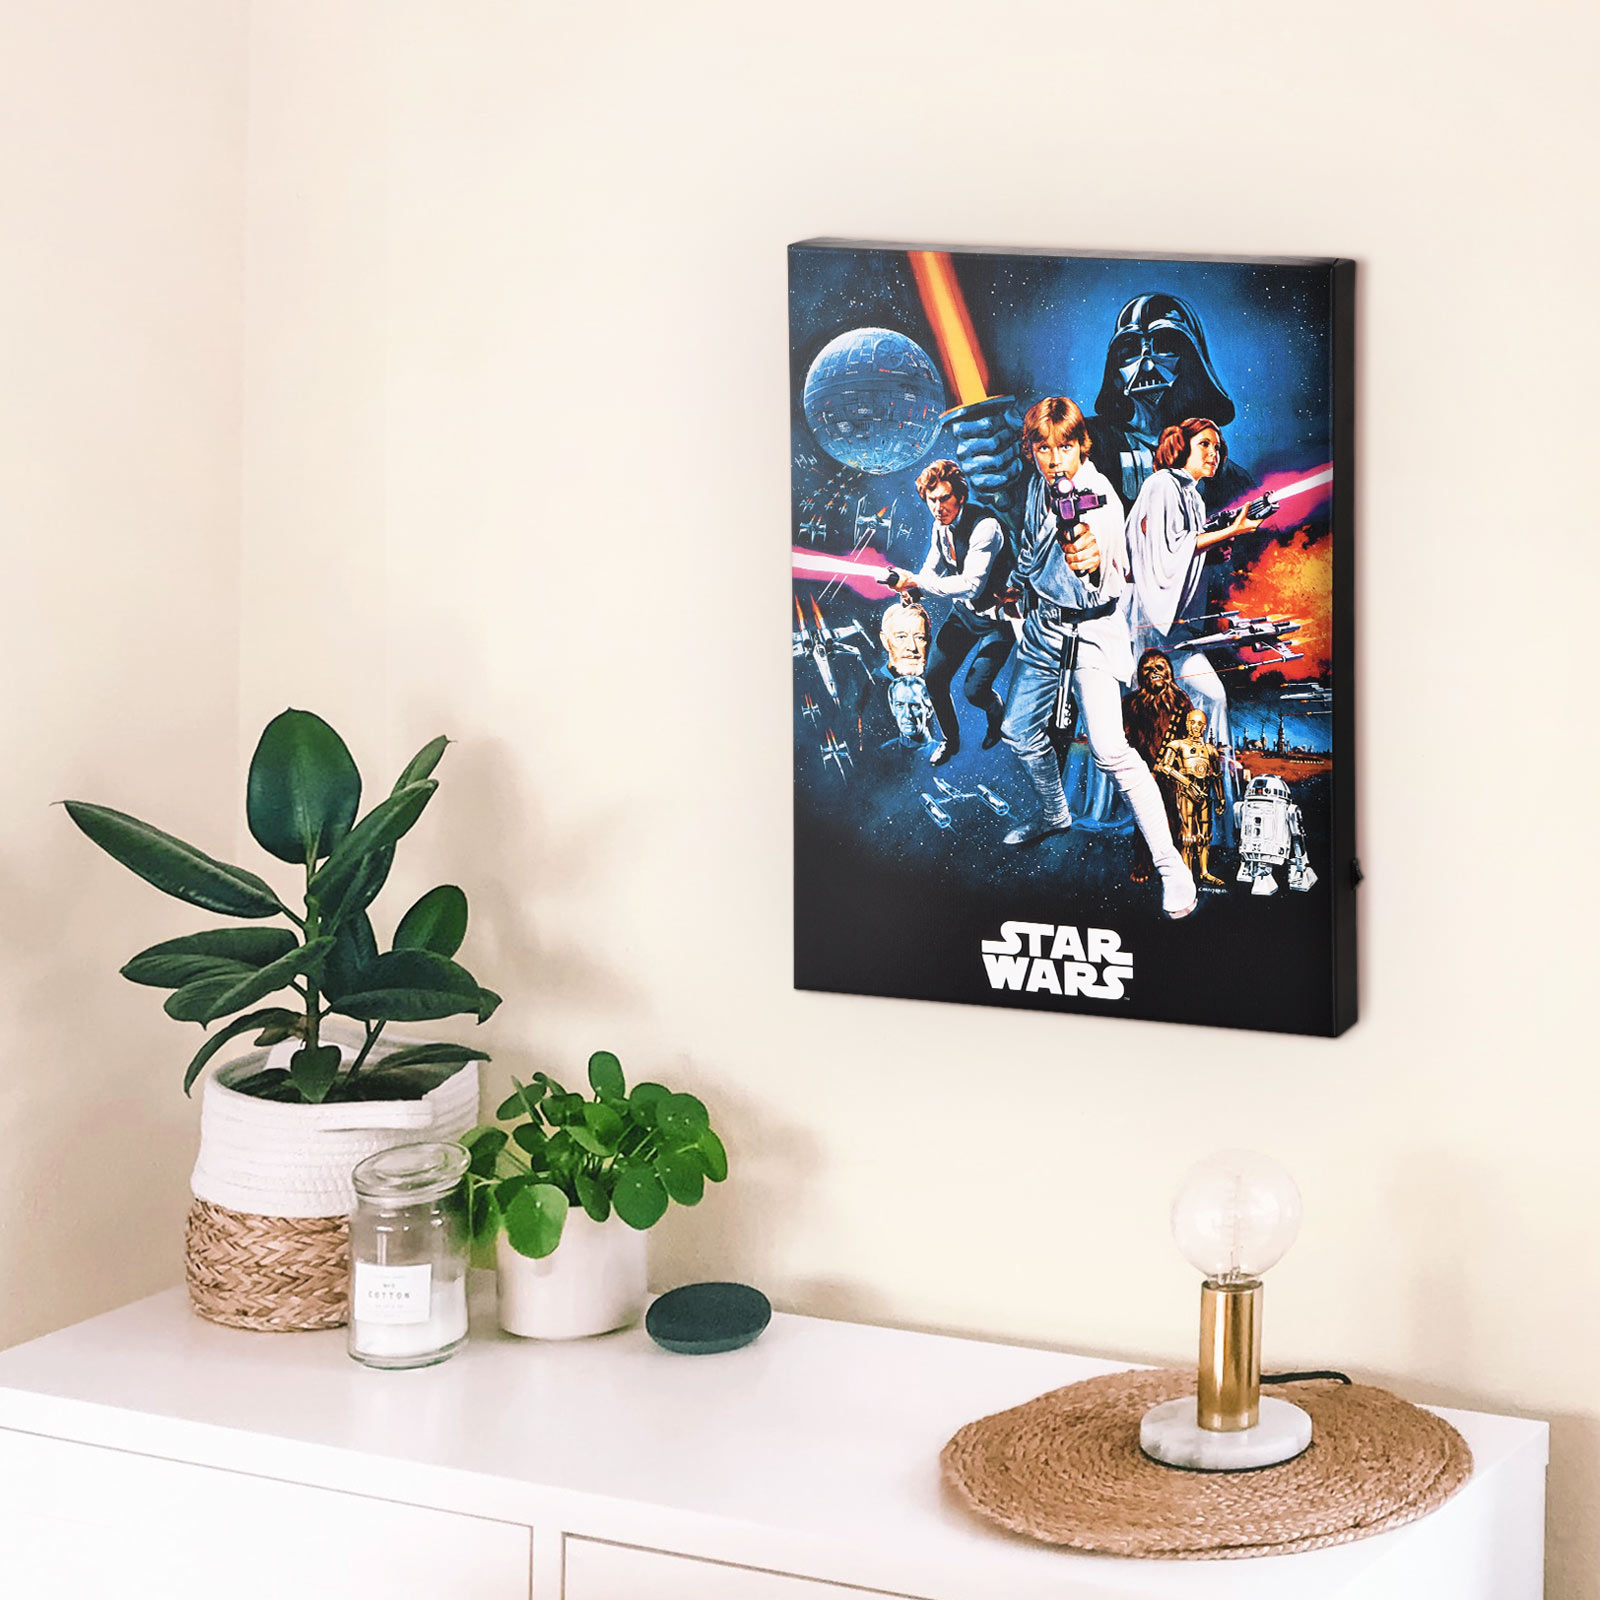 Star Wars - A New Hope muurschildering met licht